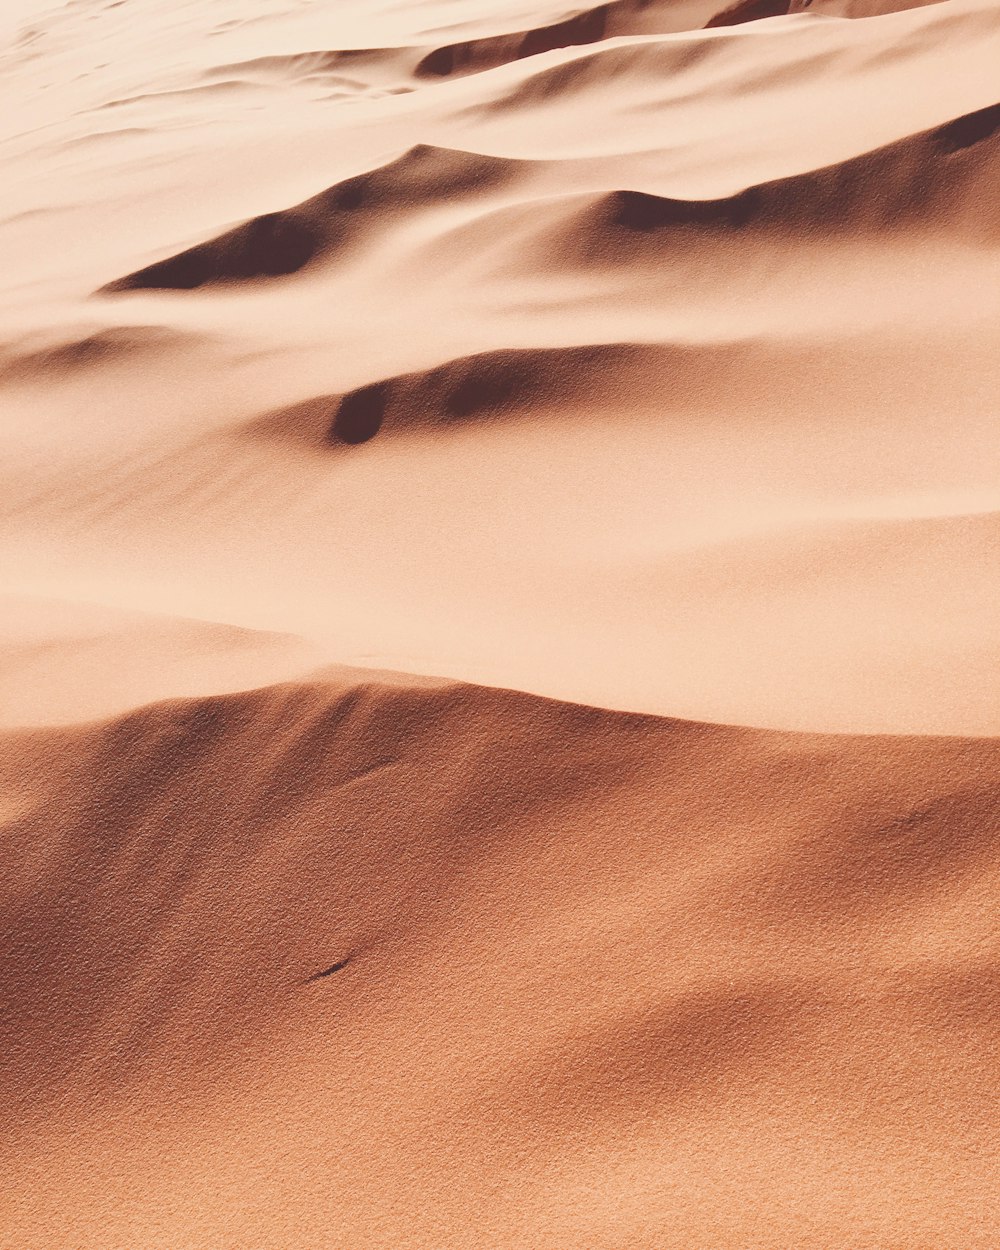 砂漠の砂の写真